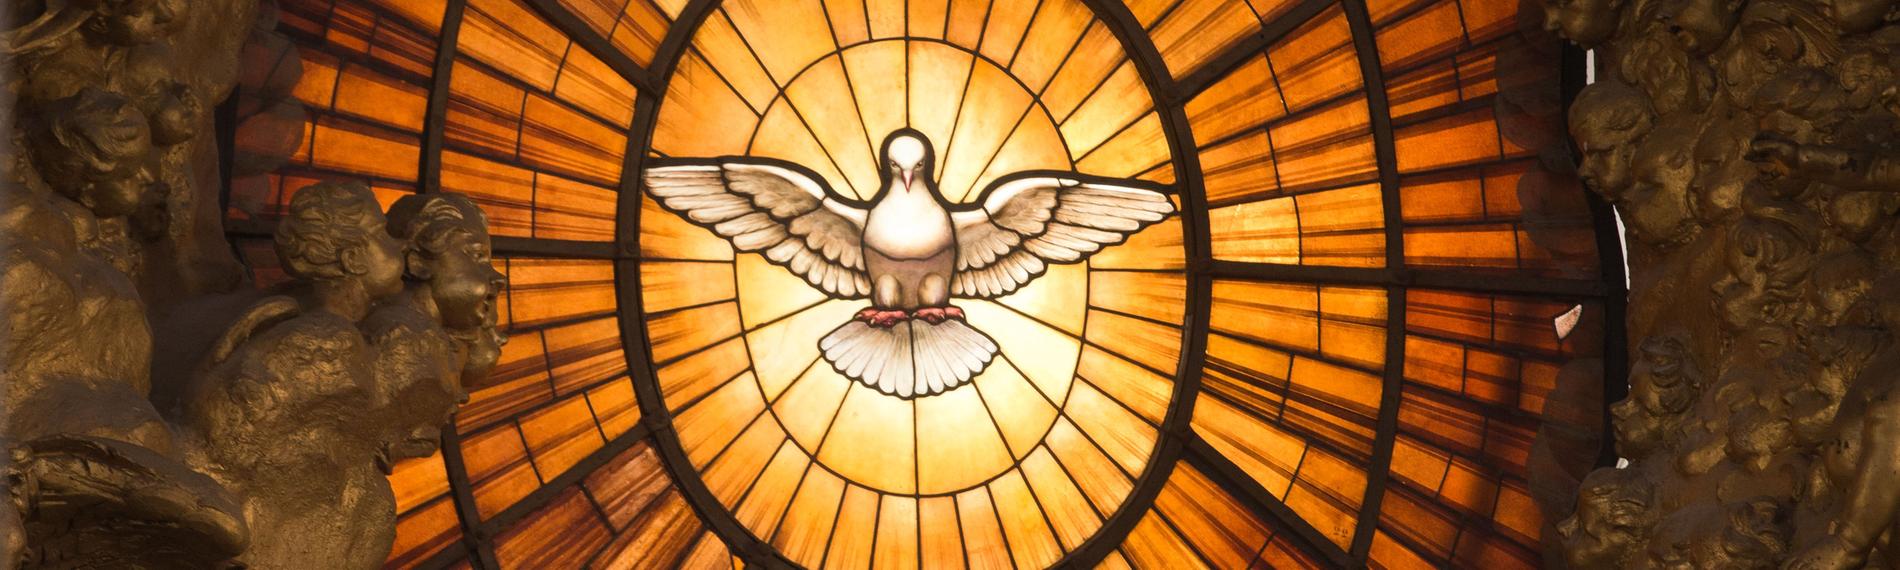 Ein Kirchenfenster mit einer Darstellung des Heiligen Geistes in Form einer Taube im Petersdom im Vatikan. Der Heilige Geist wird oft als Taube dargestellt.